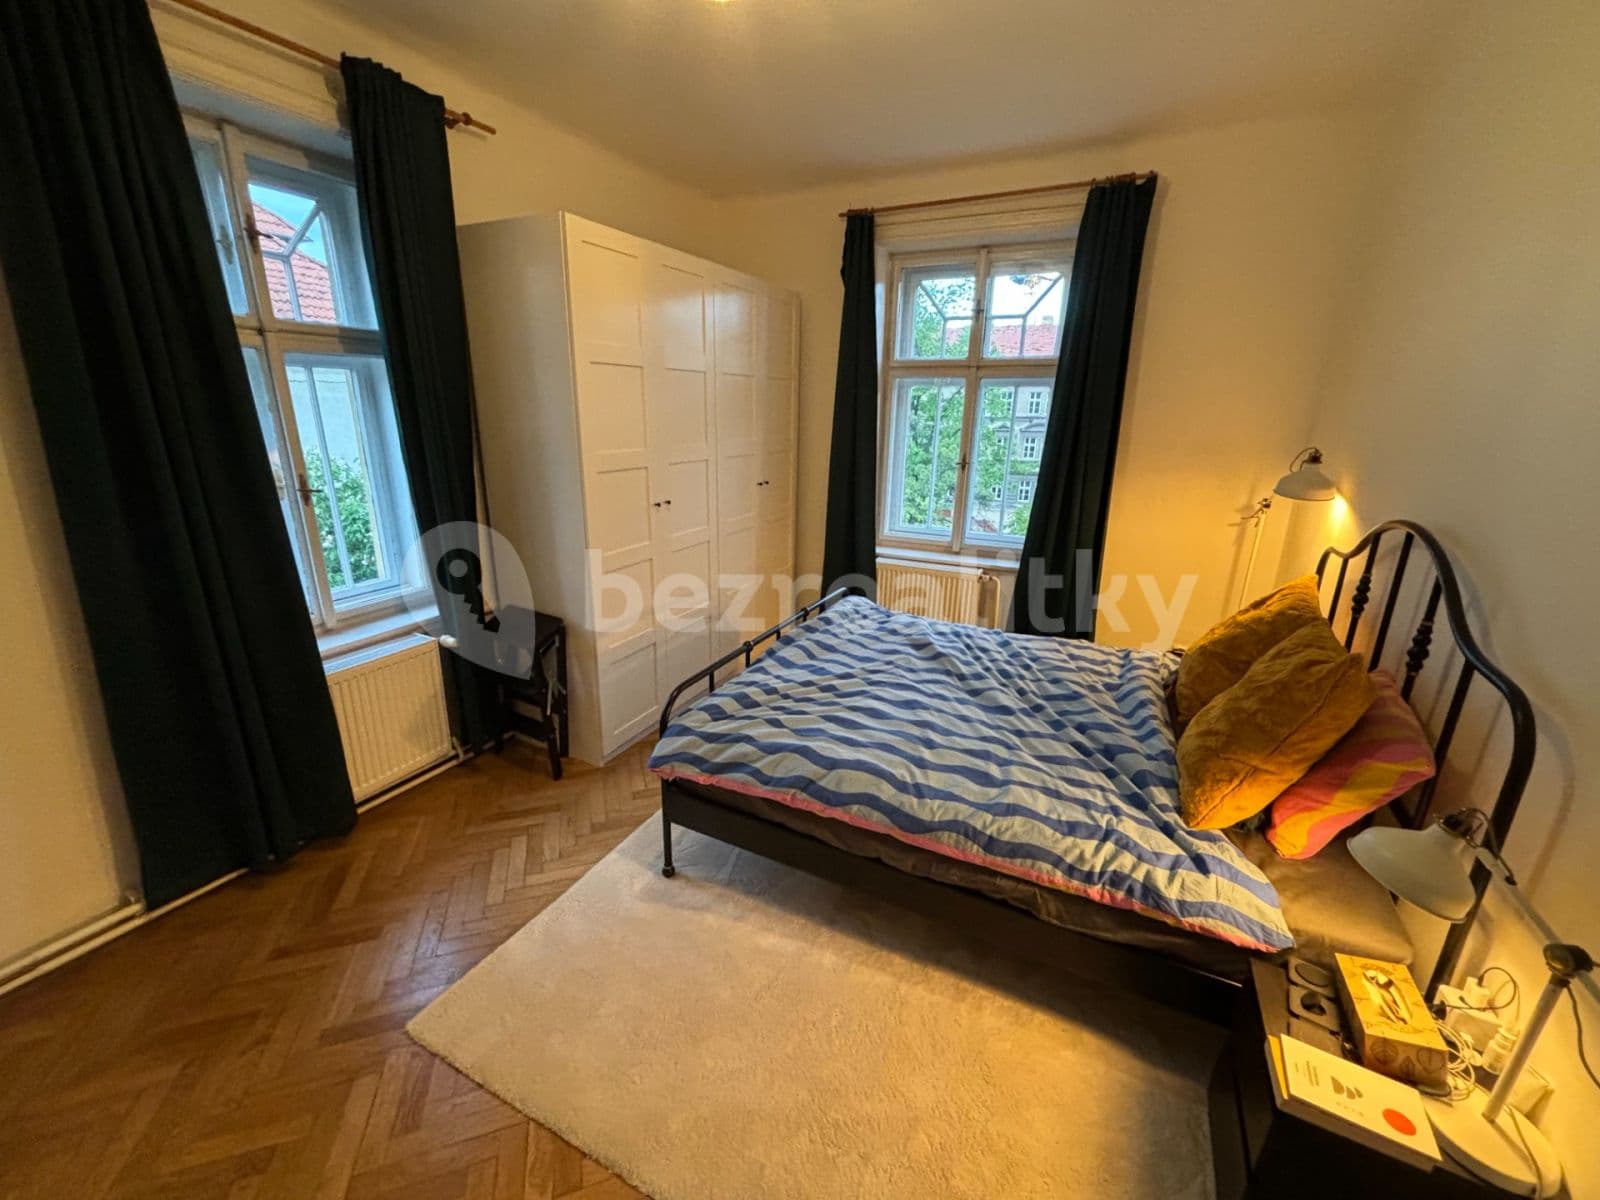 2 bedroom flat to rent, 71 m², Slovenská, Prague, Prague